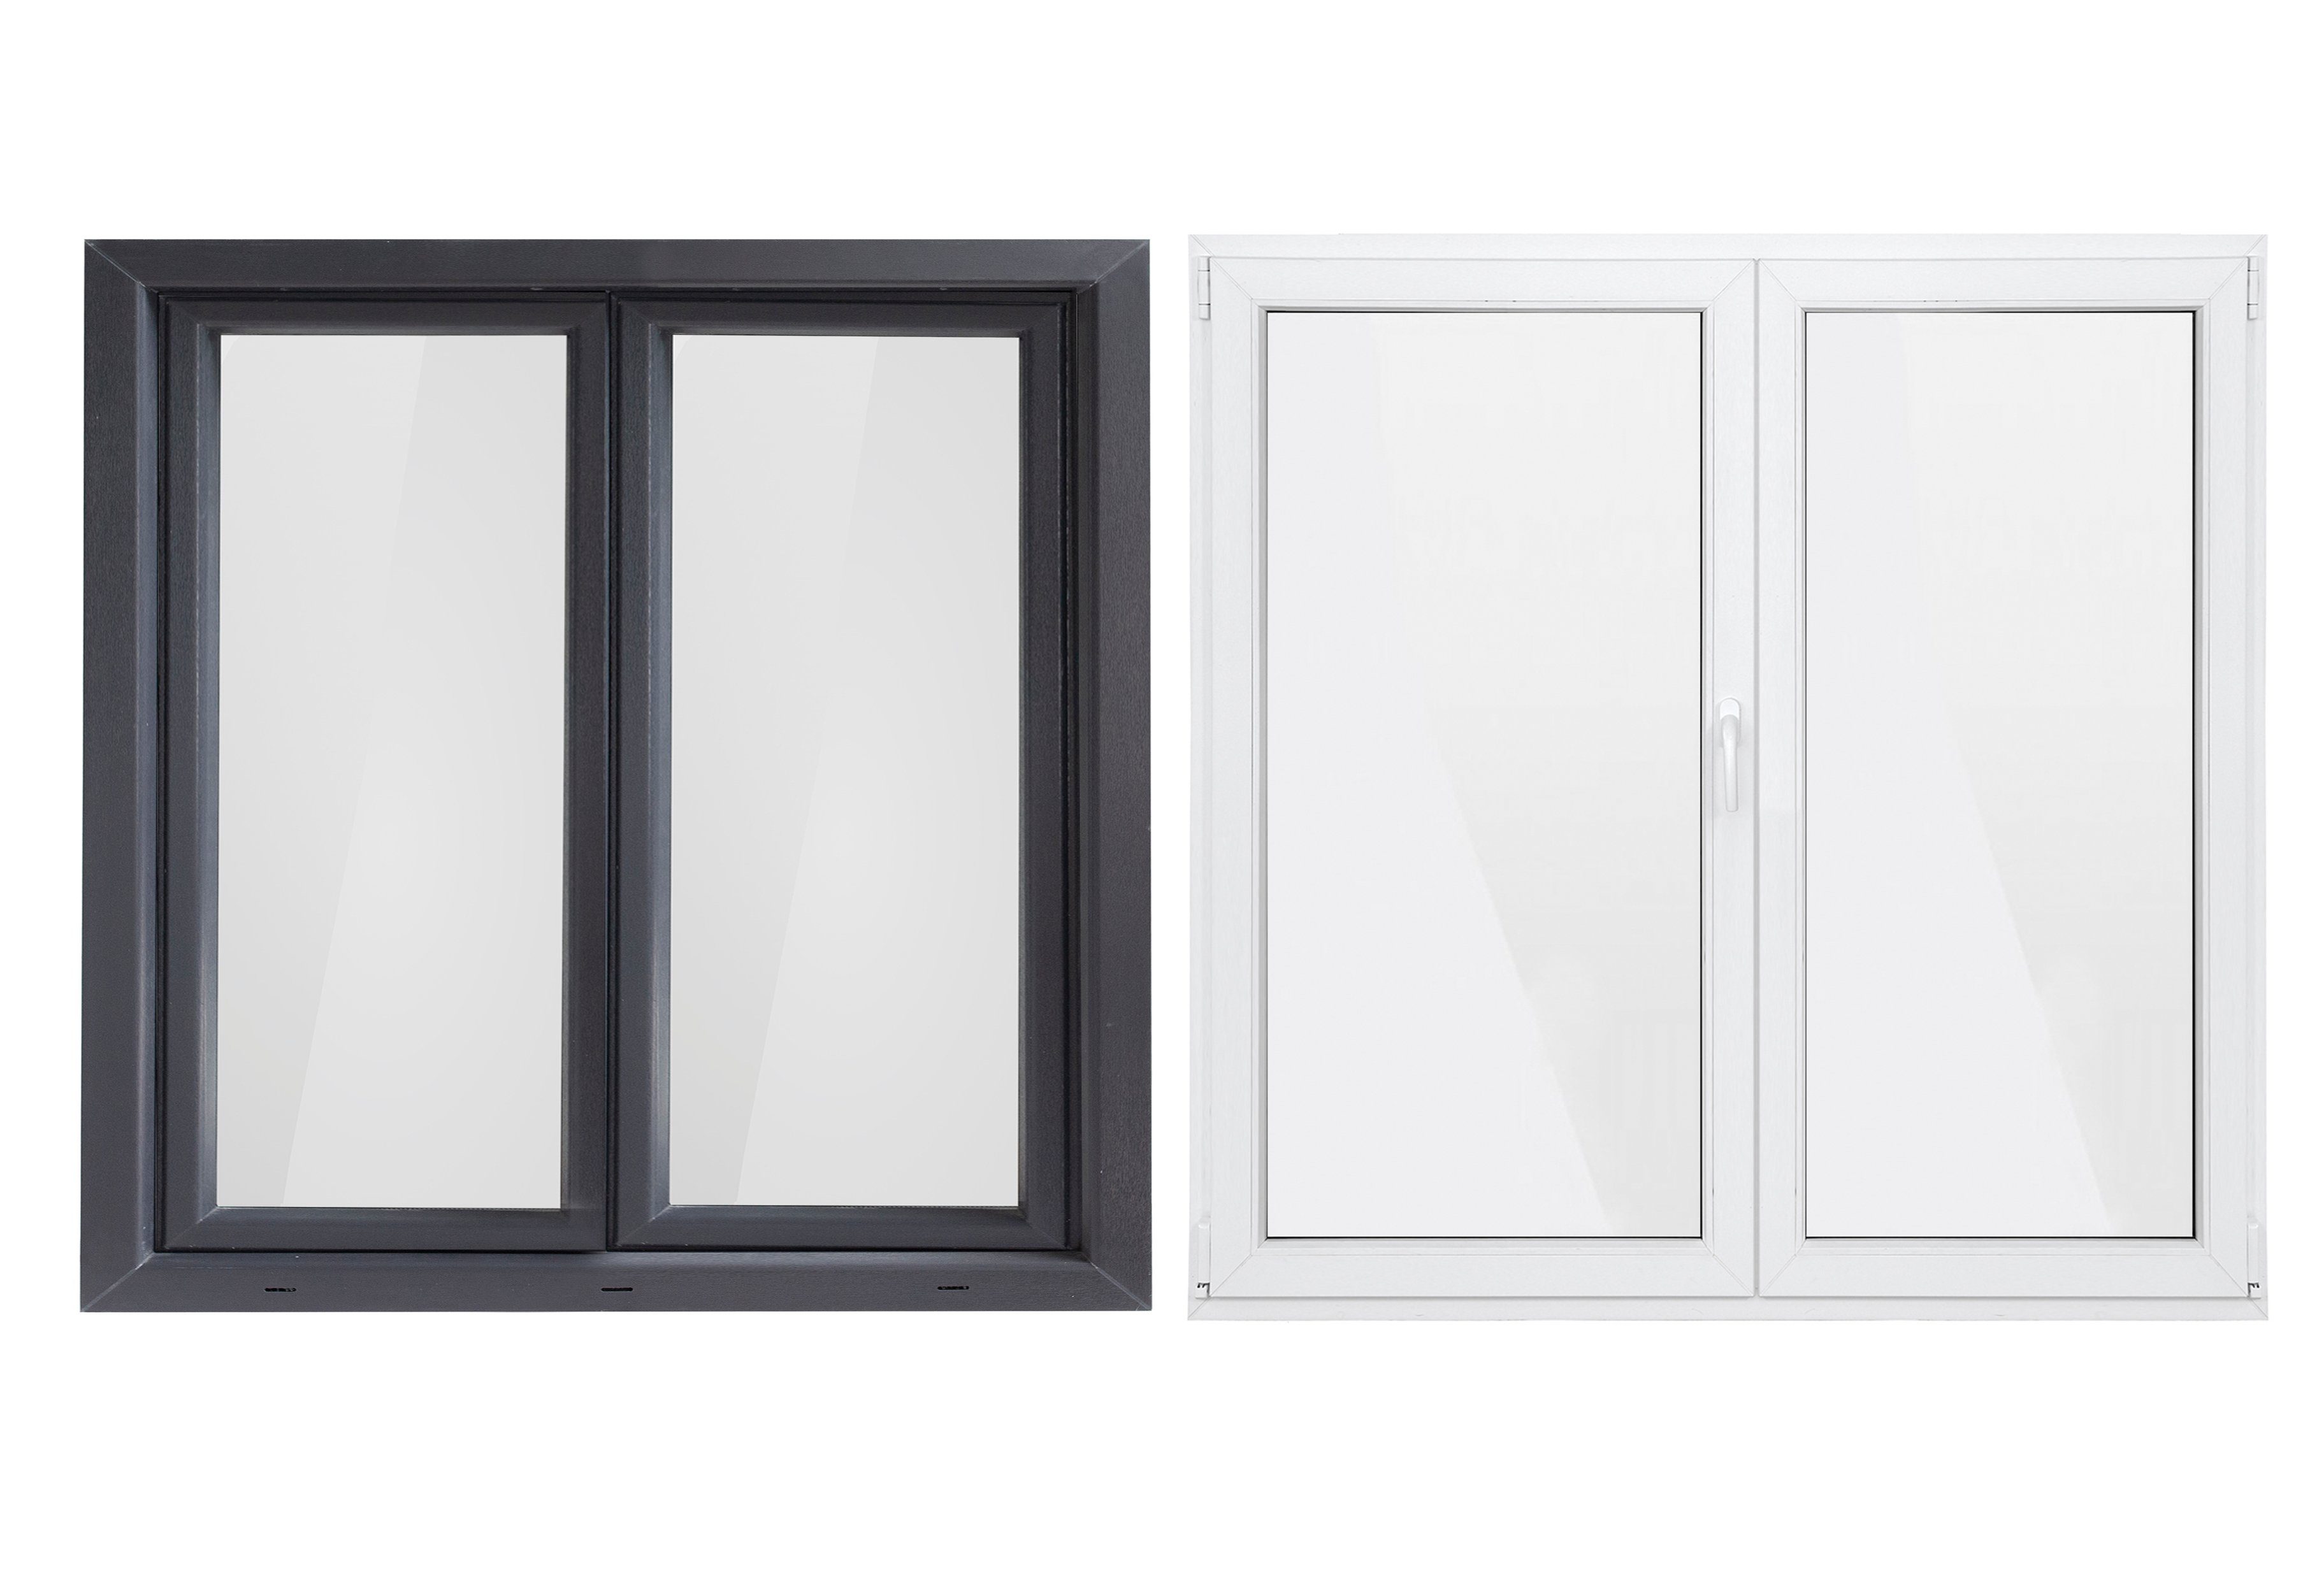 SN Deco Kunststofffenster Fenster, 2 Flügel, 1200x1200, außen  anthrazit/innen weiß, 70 mm Profil, (Set), RC2 Sicherheitsbeschlag,  Hochwertiges 5-Kammer-Profil